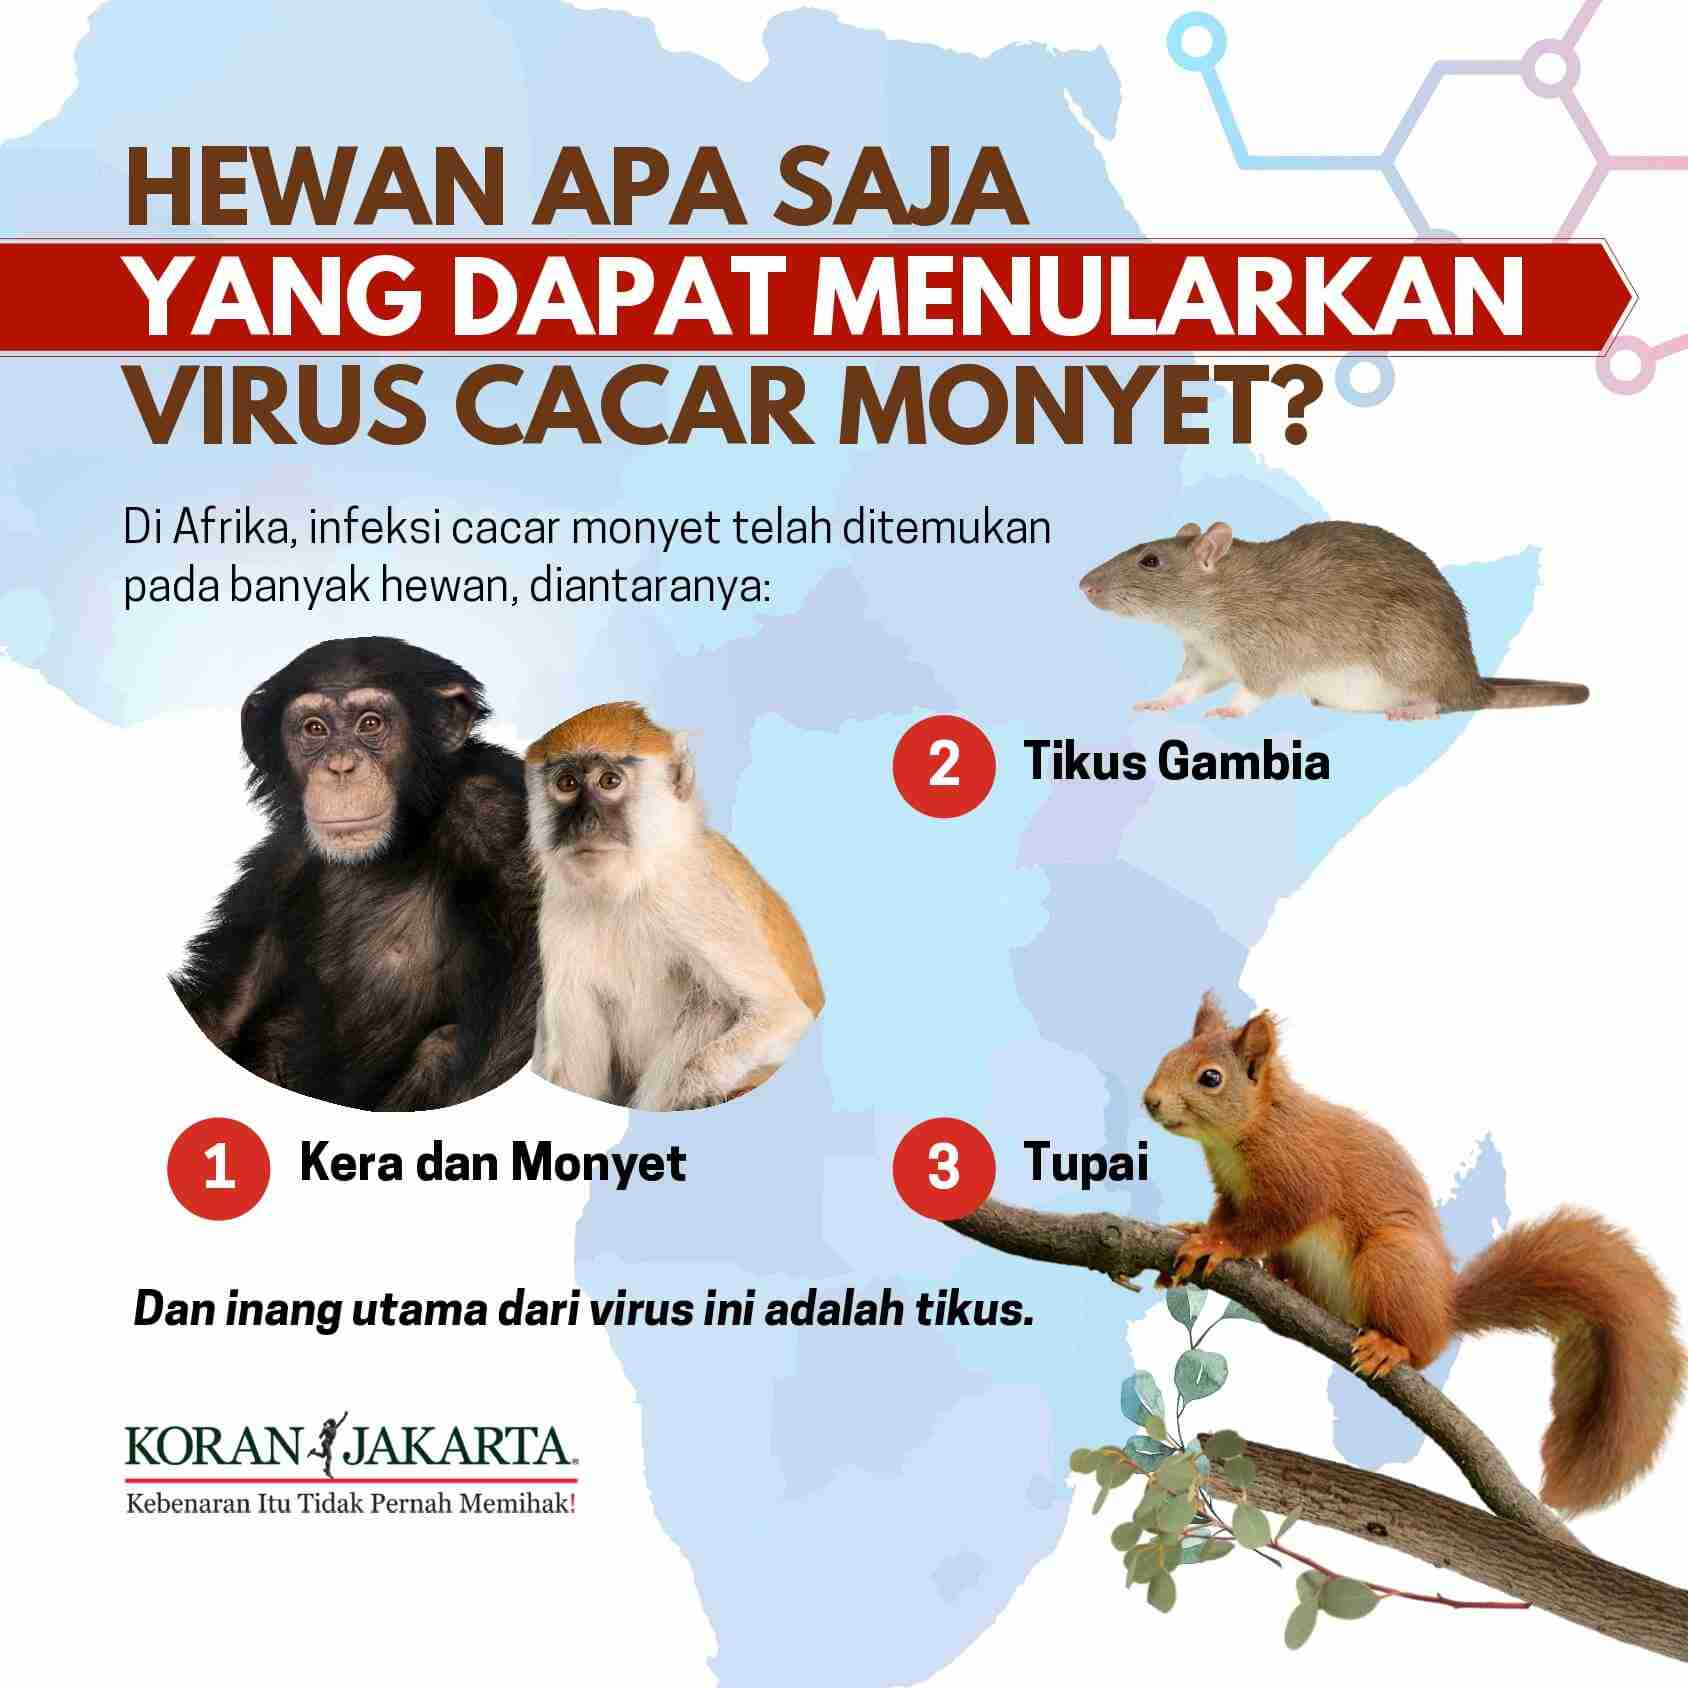 Cacar Monyet Dapat Menyebabkan Kematian. Apakah Bisa Menular? 5